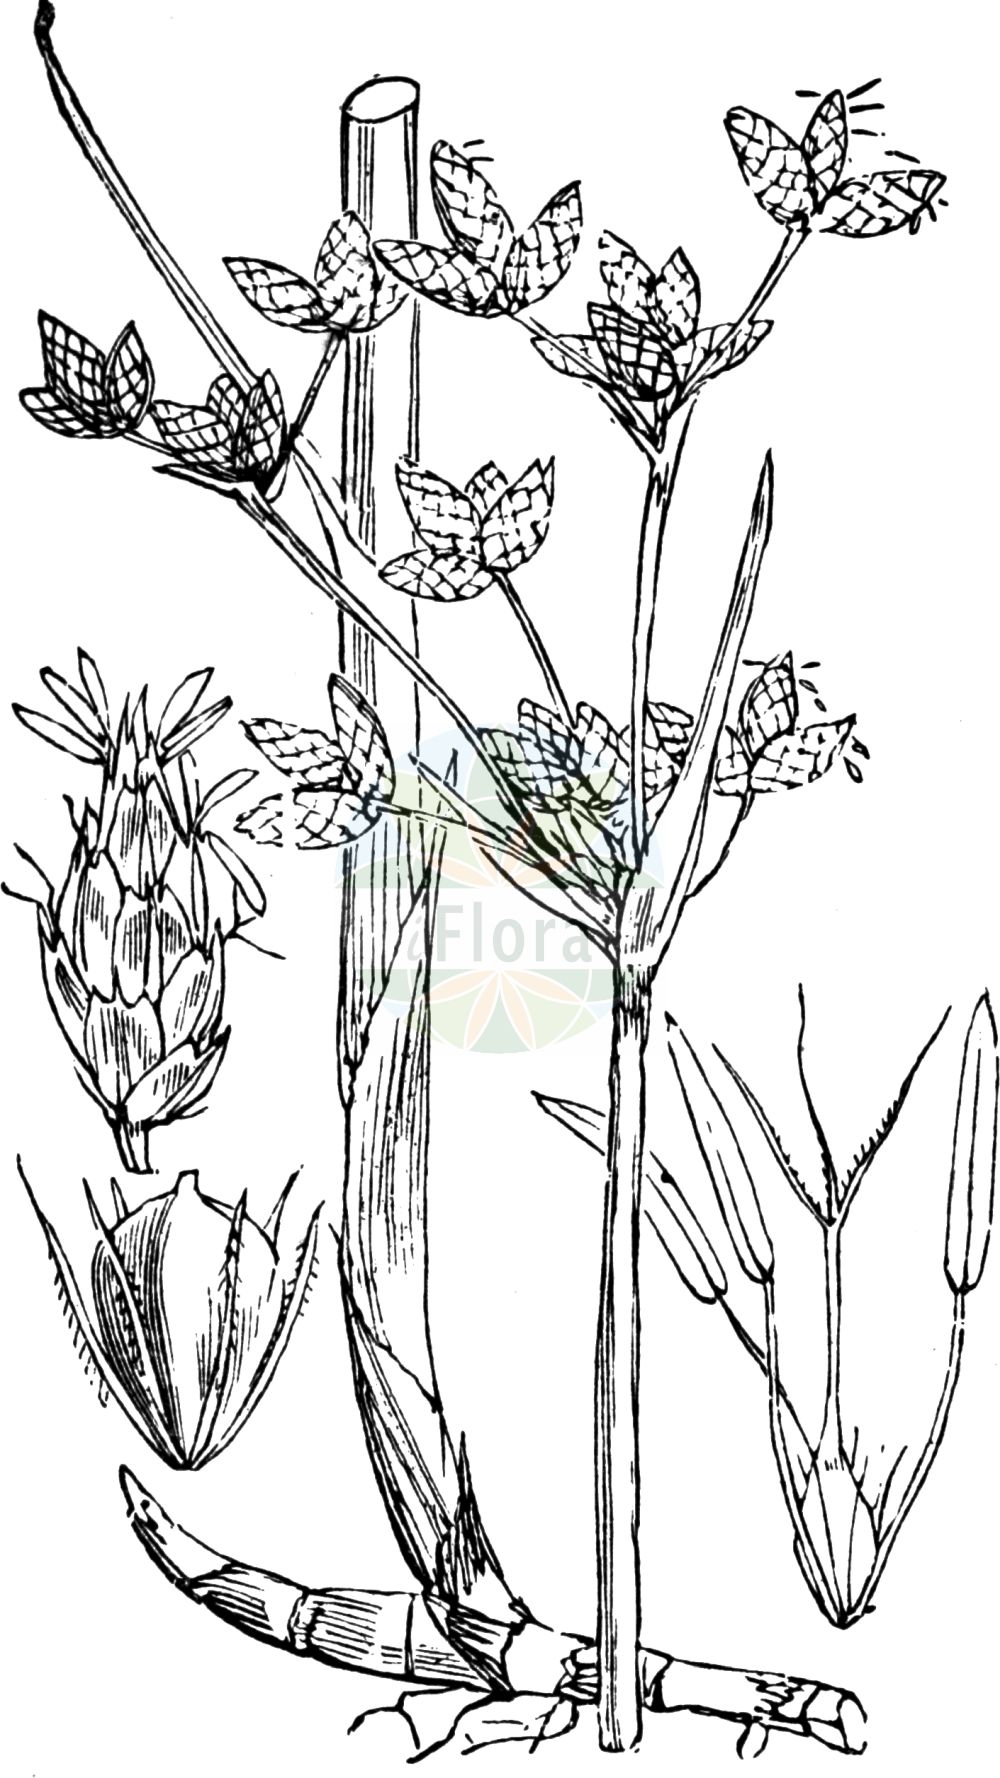 Historische Abbildung von Schoenoplectus lacustris (Gewöhnliche Teichsimse - Common Club-rush). Das Bild zeigt Blatt, Bluete, Frucht und Same. ---- Historical Drawing of Schoenoplectus lacustris (Gewöhnliche Teichsimse - Common Club-rush). The image is showing leaf, flower, fruit and seed.(Schoenoplectus lacustris,Gewöhnliche Teichsimse,Common Club-rush,Schoenoplectus lacustris,Scirpus lacustris,Gewoehnliche Teichsimse,Flecht-Simse,Graue Seebinse,Graugruene Teichsimse,Gruene Teichbinse,Salz-Binse,Salz-Teichsimse,Seebinse,Common Club-rush,Softstem Bulrush,Lakeshore Bulrush,Matrush,Schoenoplectus,Teichsimse,Bulrush,Cyperaceae,Sauergräser,Sedge family,Blatt,Bluete,Frucht,Same,leaf,flower,fruit,seed,Fitch et al. (1880))